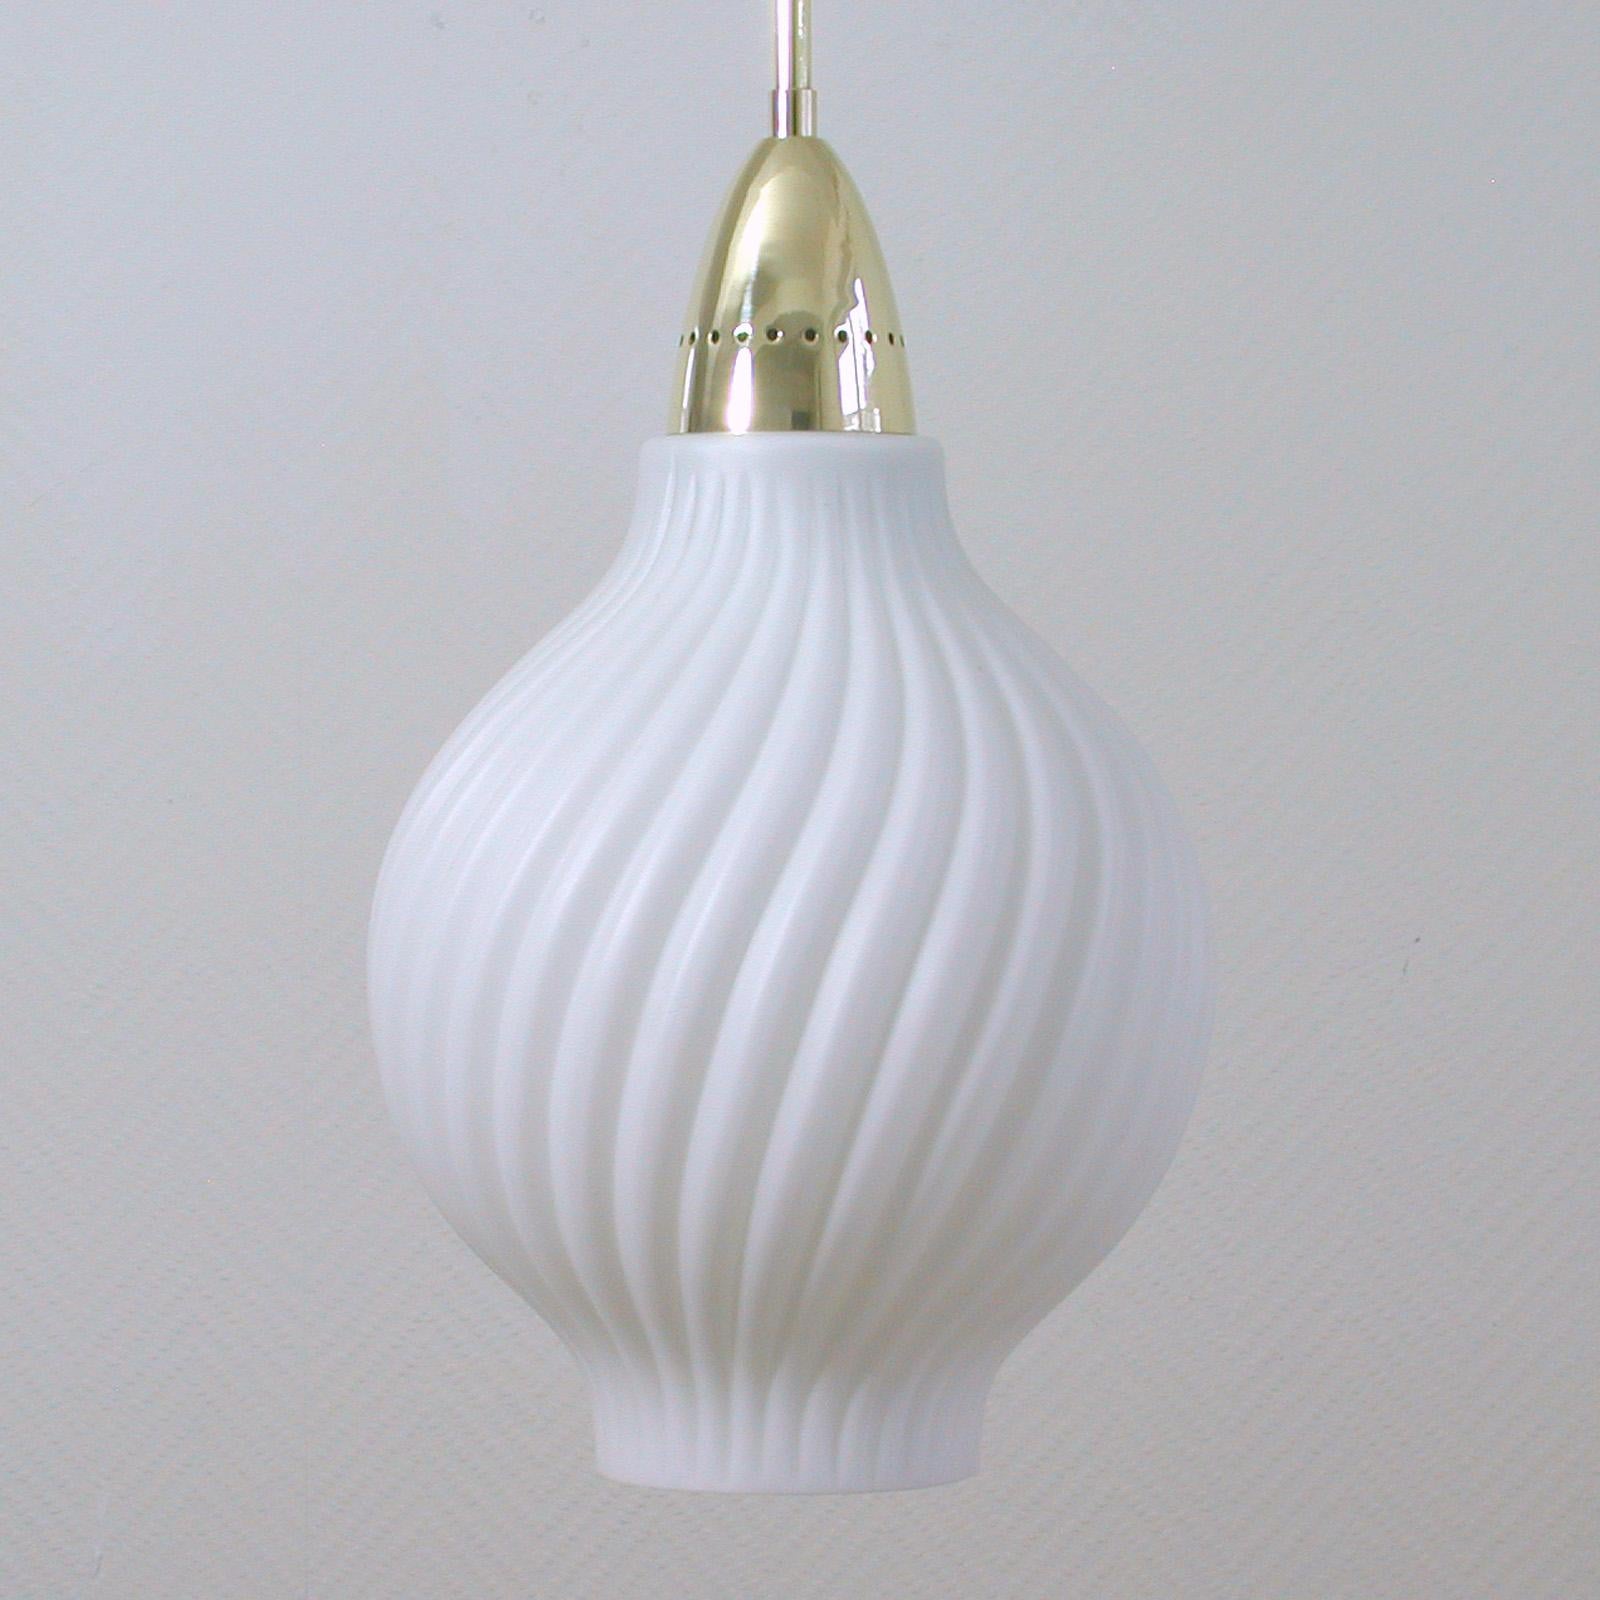 Diese elegante italienische Pendelleuchte wurde in den 1950er Jahren in Italien entworfen und hergestellt.

Sie hat einen schönen weißen Lampenschirm aus geripptem Glas mit Messingaufsatz, einen Lampenstab aus Messing und einen Baldachin aus